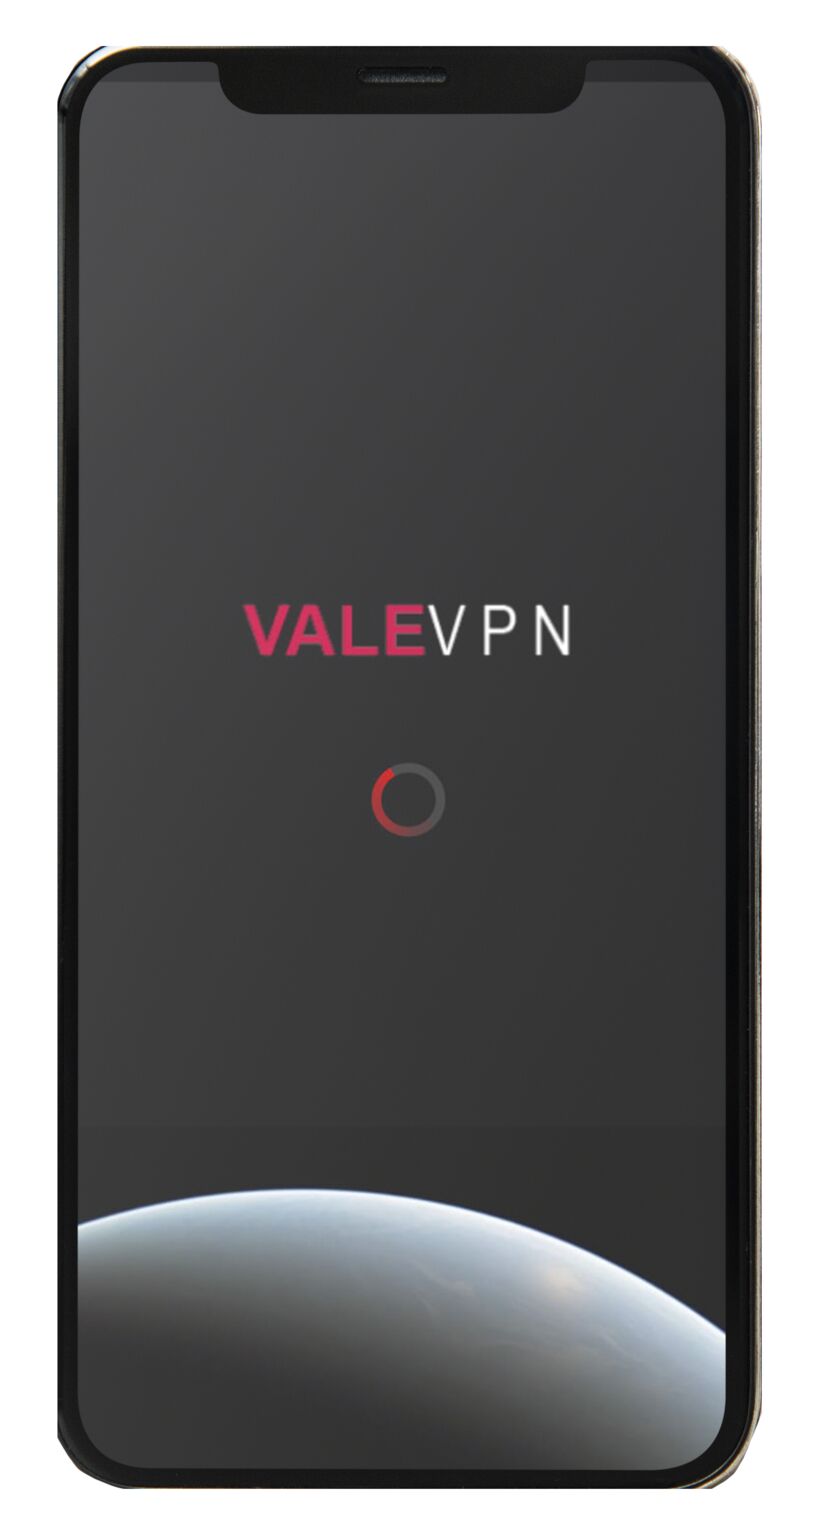 ValeVPN on LinkedIn: #valevpn #security #vpn